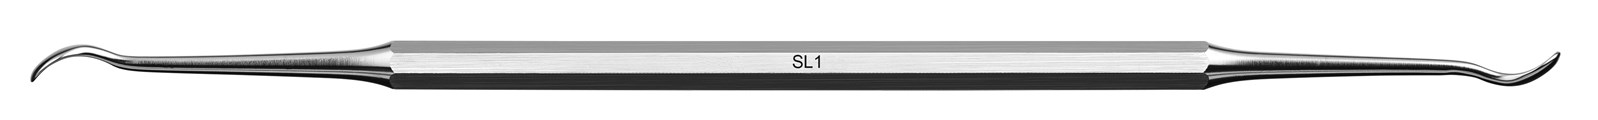 Instrument pro sinus lift - SL1, ADEP růžový